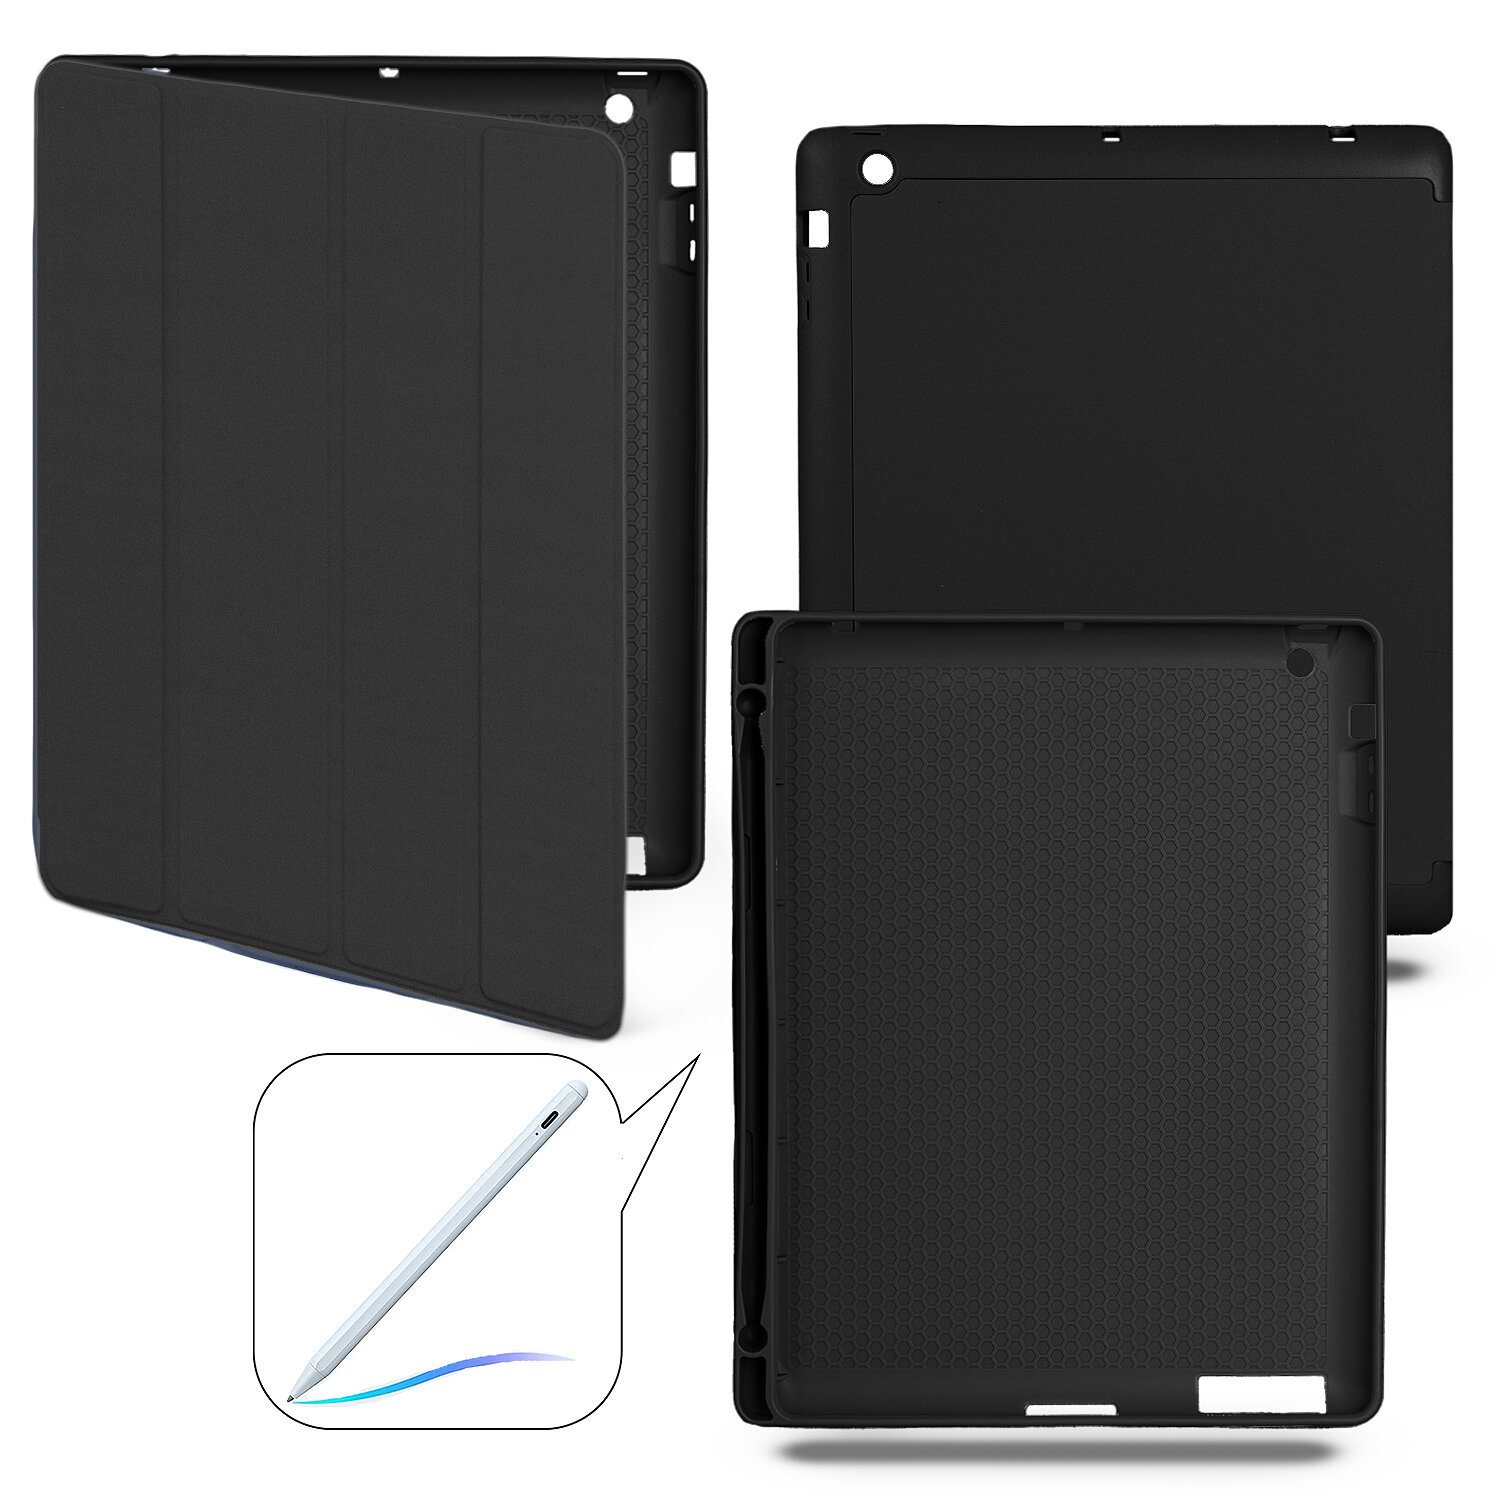 Чехол-книжка для iPad 2/3/4 с отделением для стилуса, черный